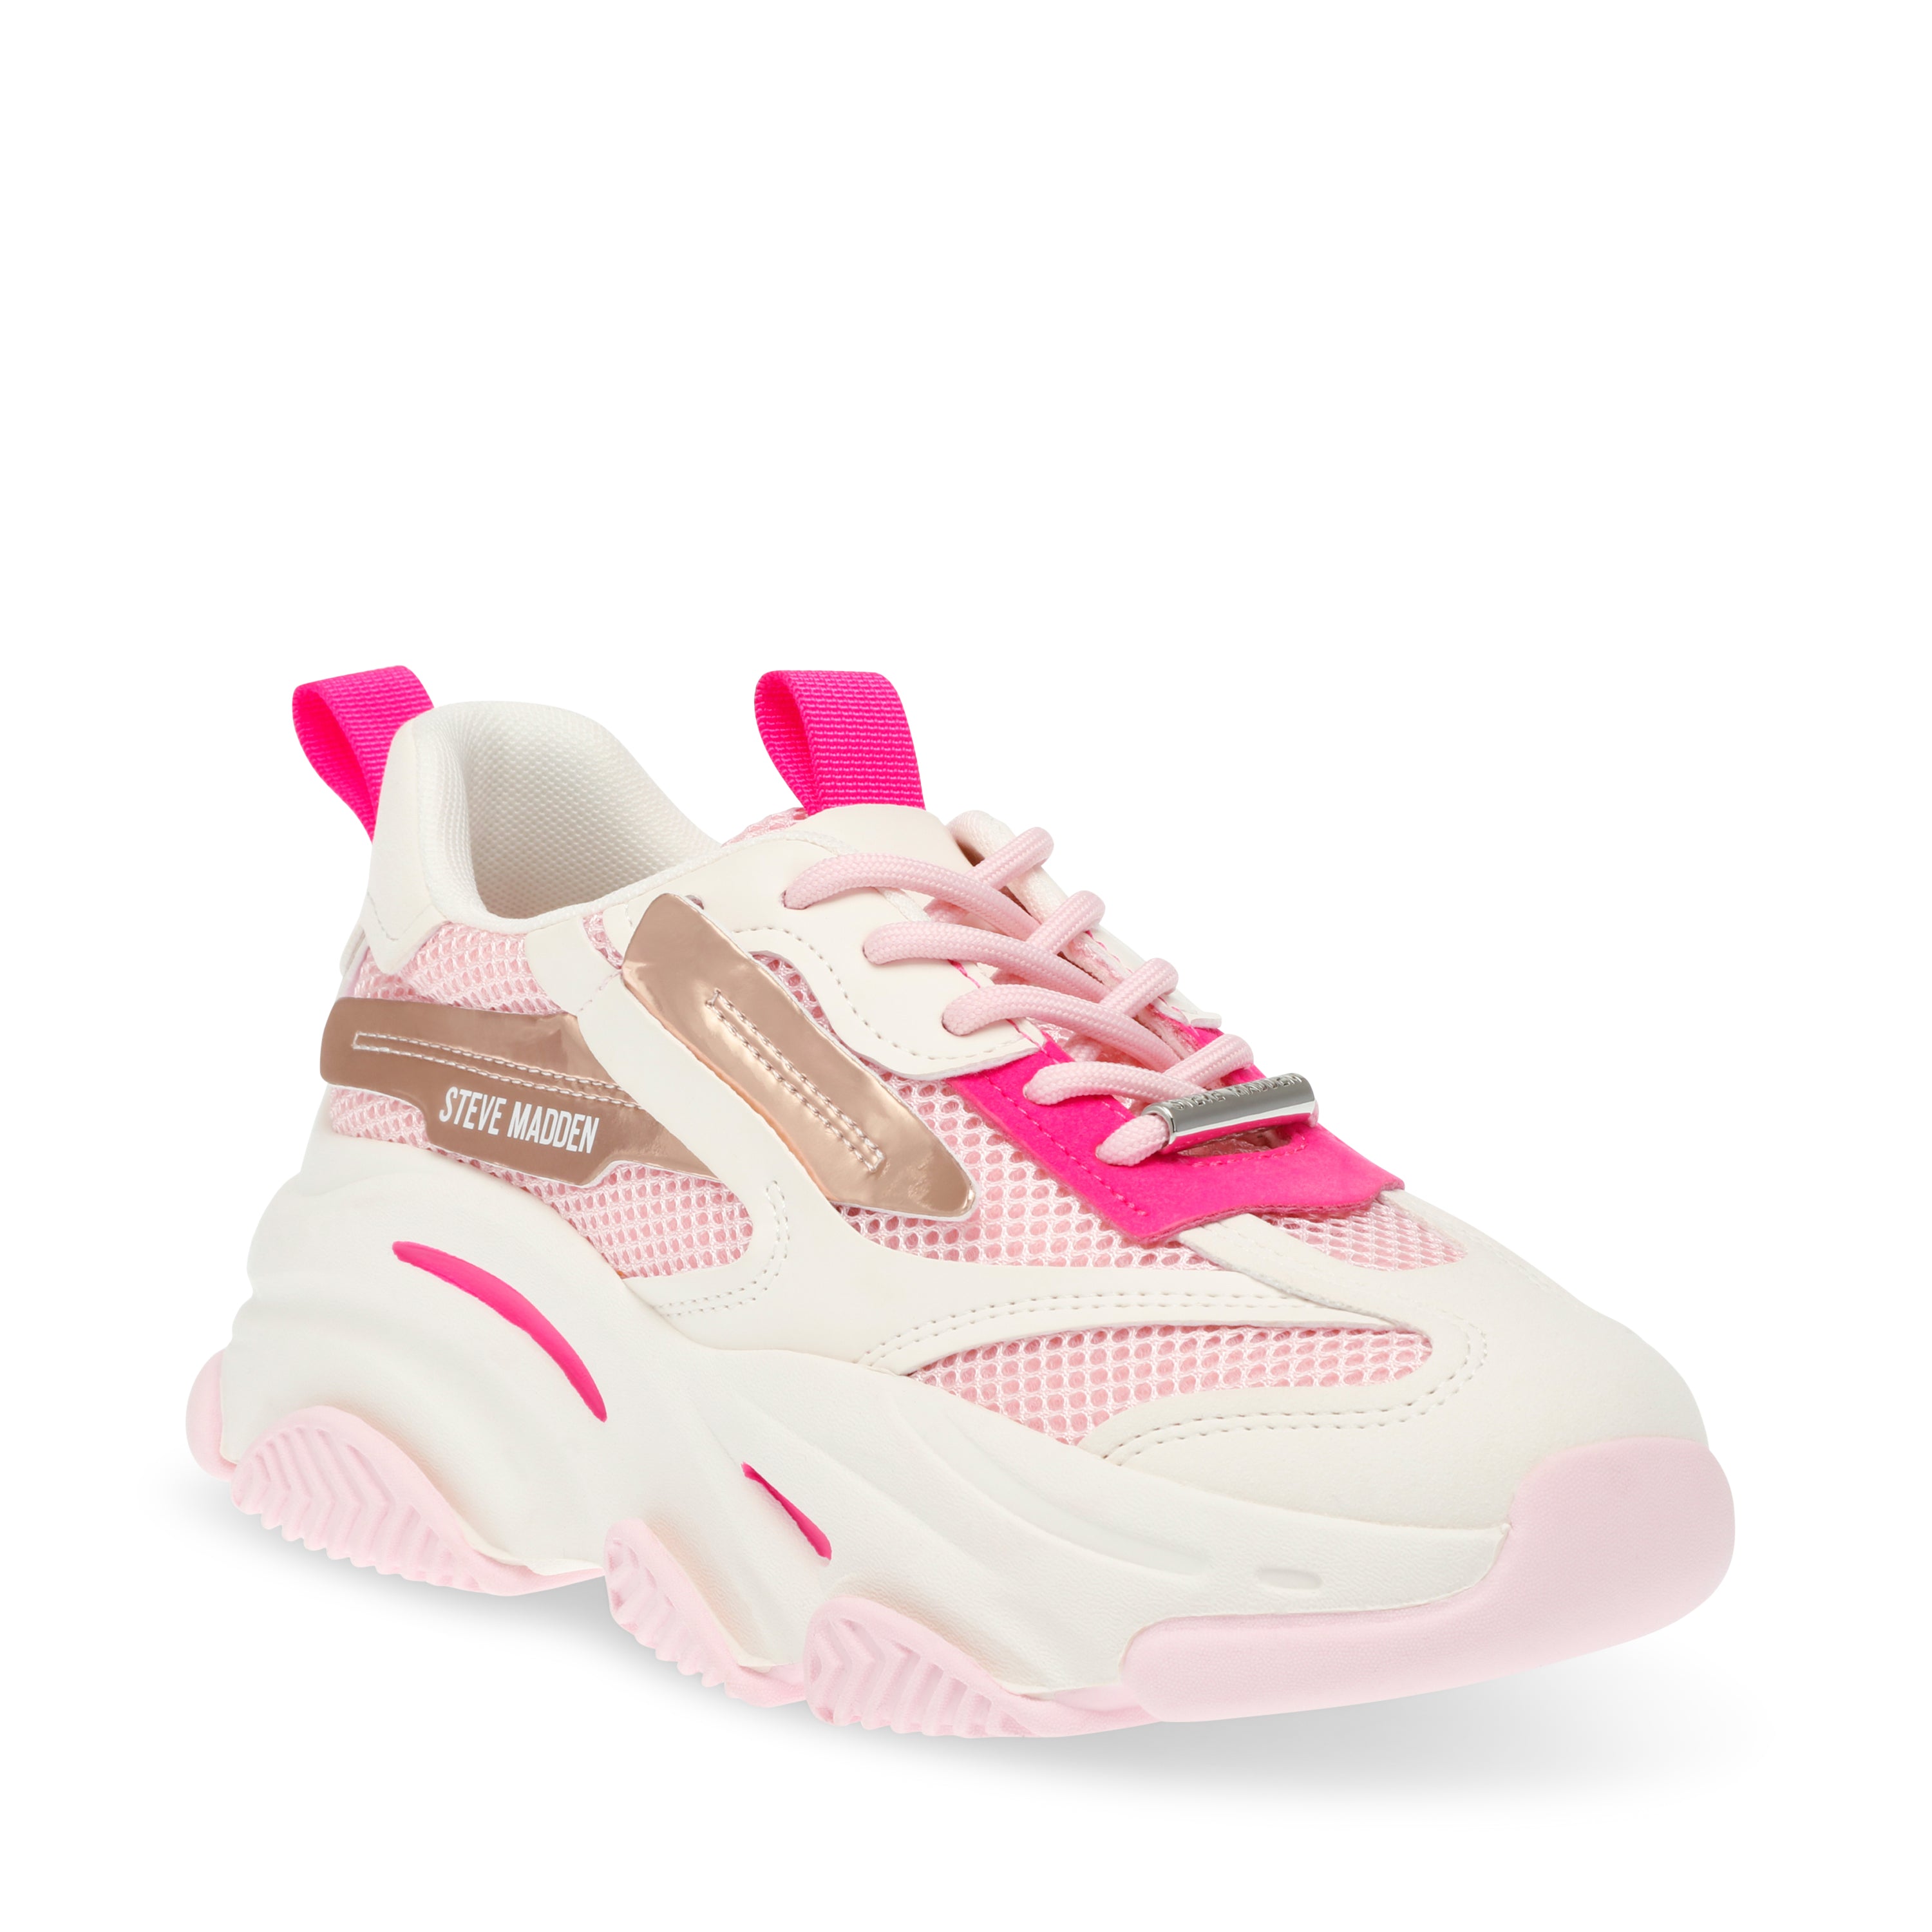 Possession-E Sneaker Pink Multi- Hover Image